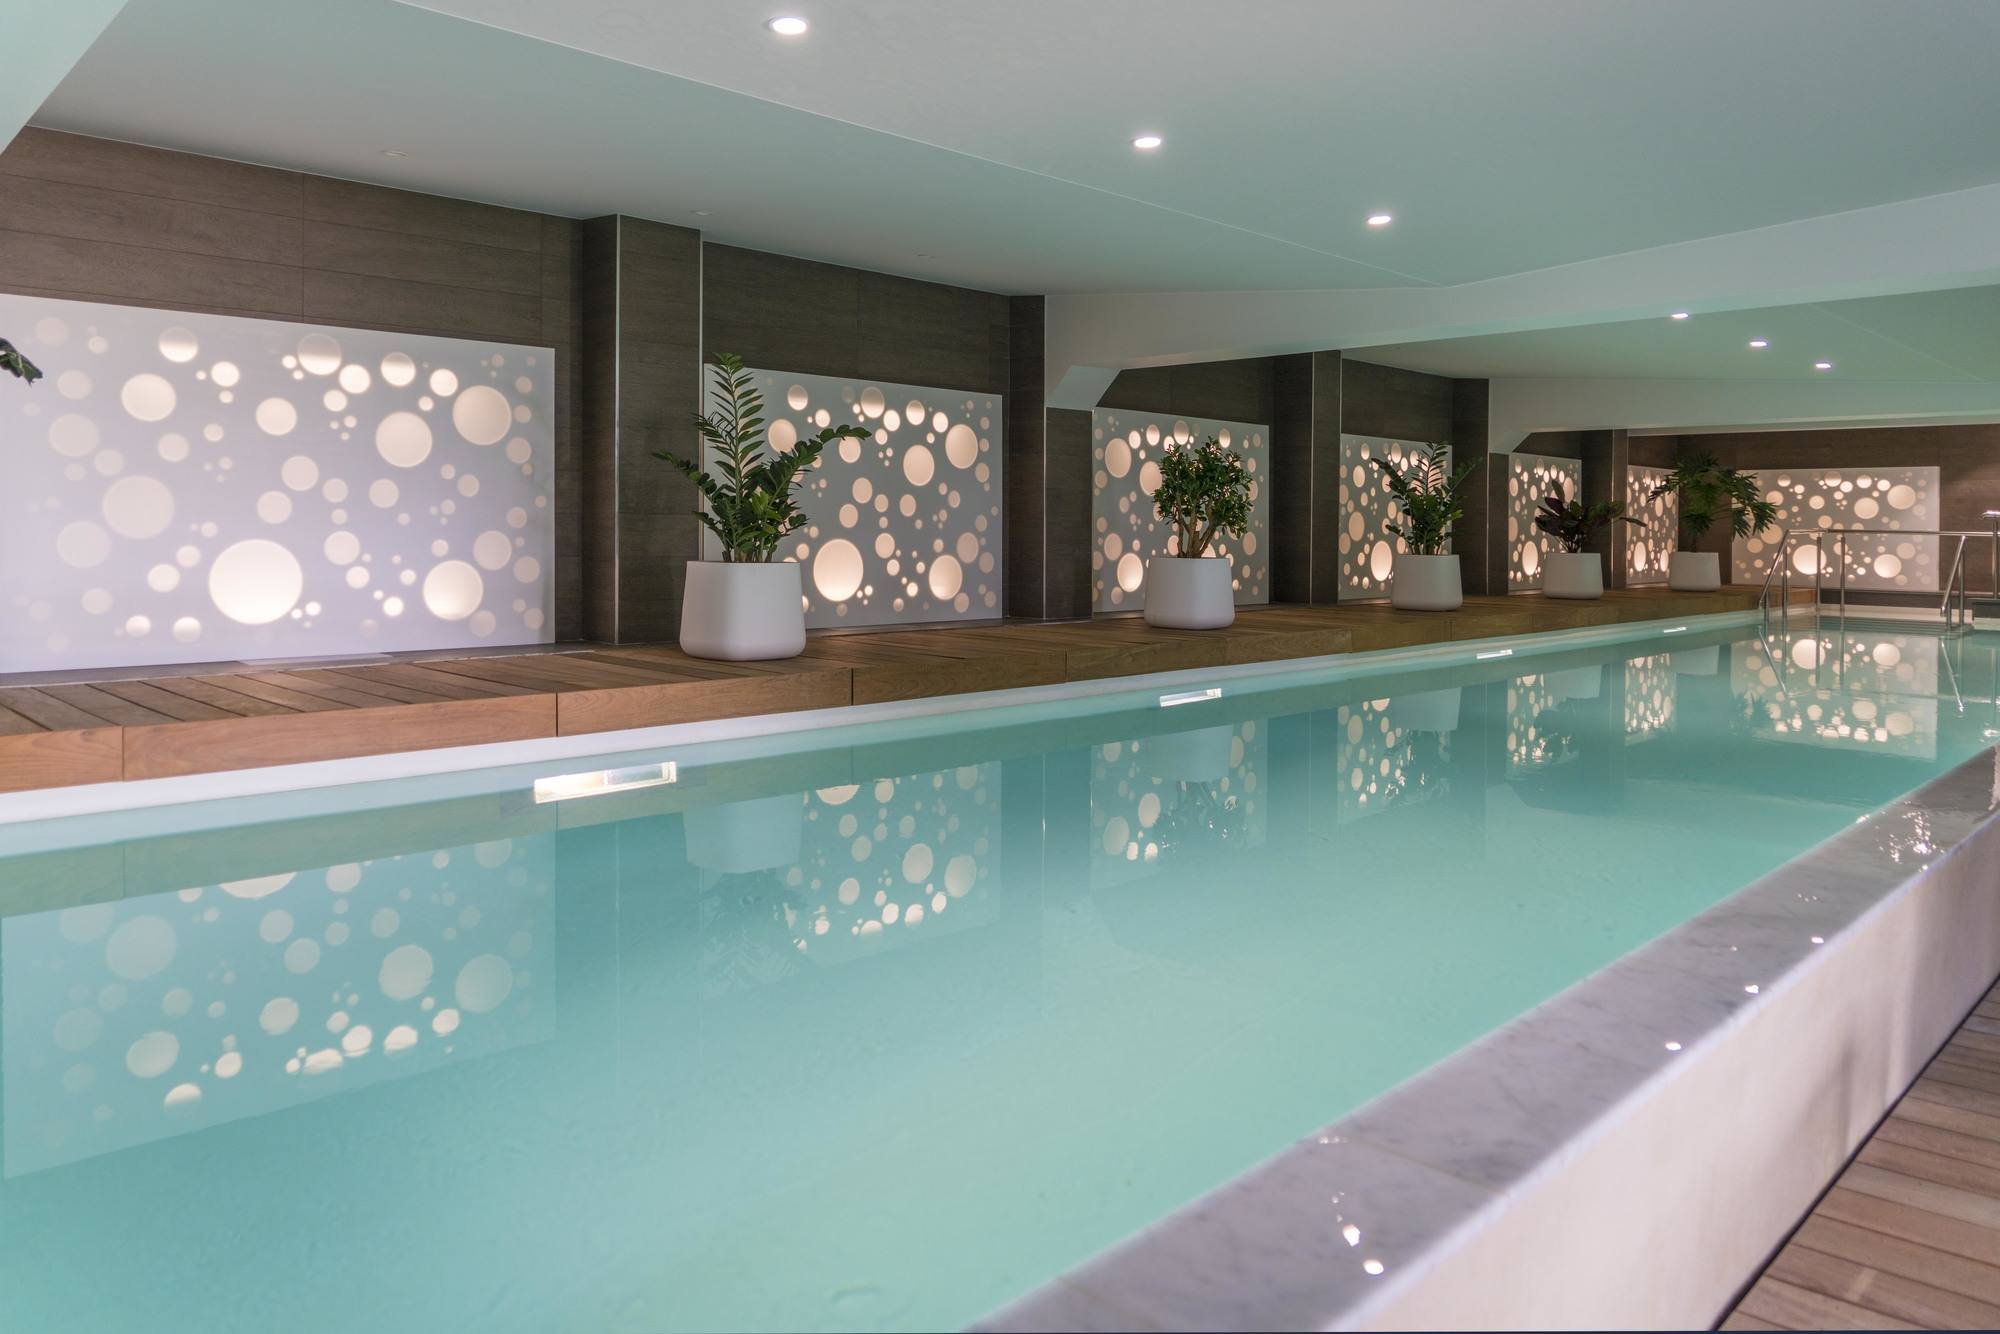 Les Jardins de Saint-Cloud | Hotel with pool near Paris